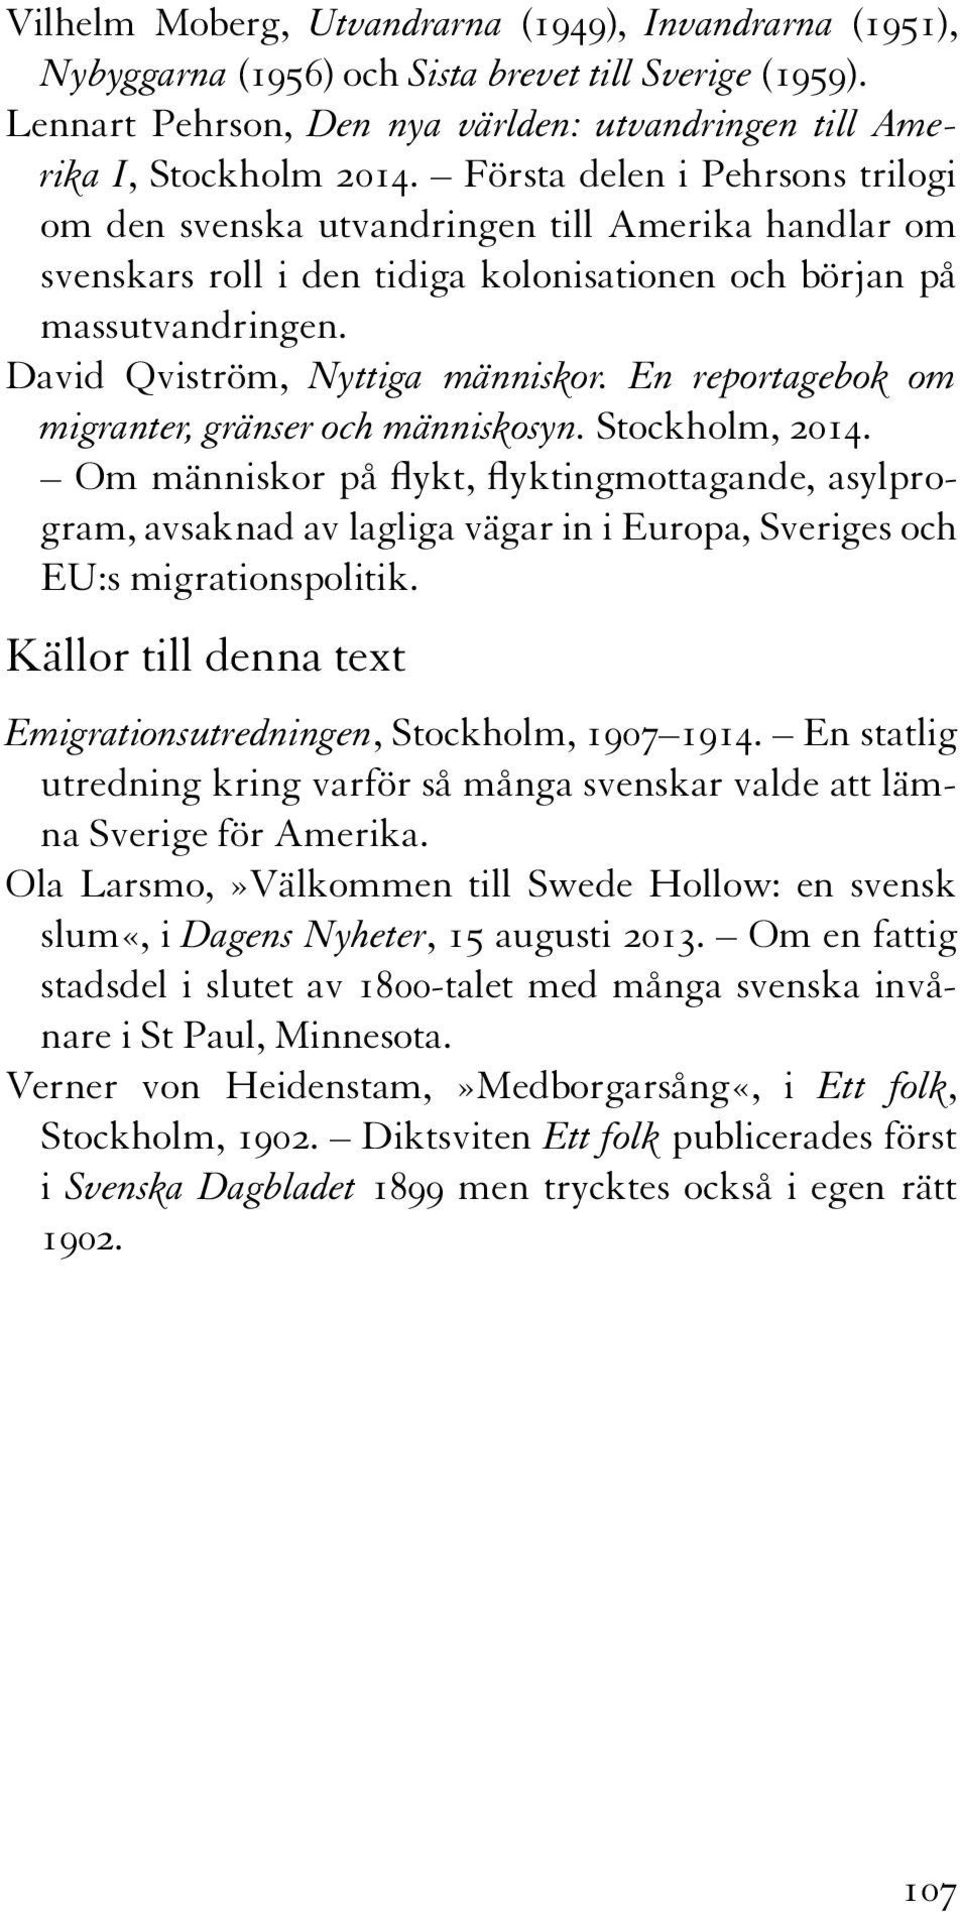 En reportagebok om migranter, gränser och människosyn. Stockholm, 2014.